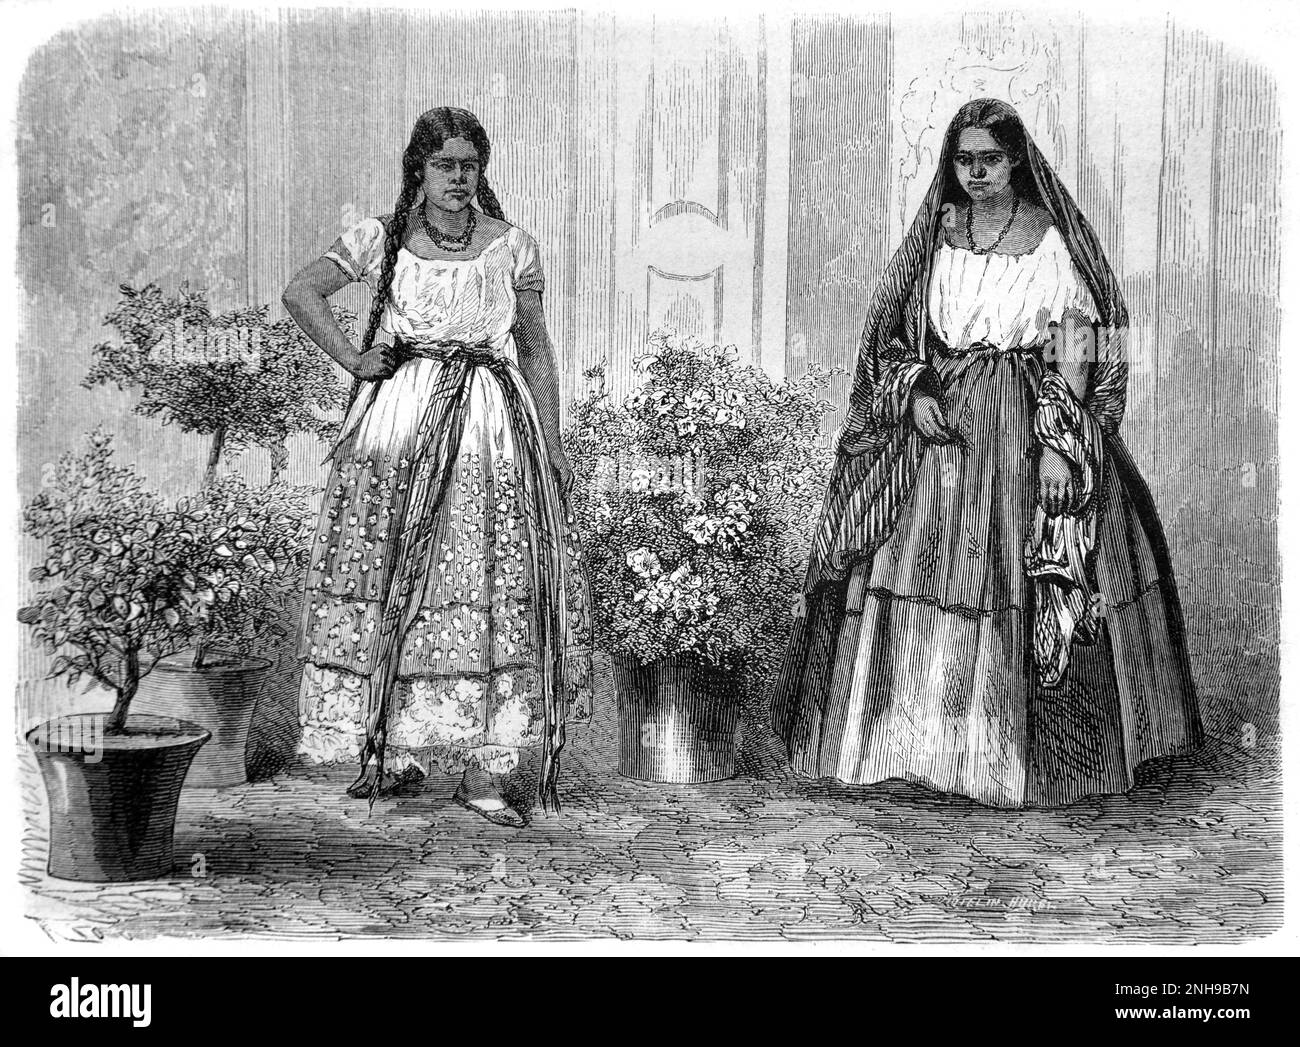 Femme mexicaine, Dame et soubrette, ou Bourgeois ou femme de classe moyenne et Maid Mexico. Gravure ancienne ou illustration 1862 Banque D'Images